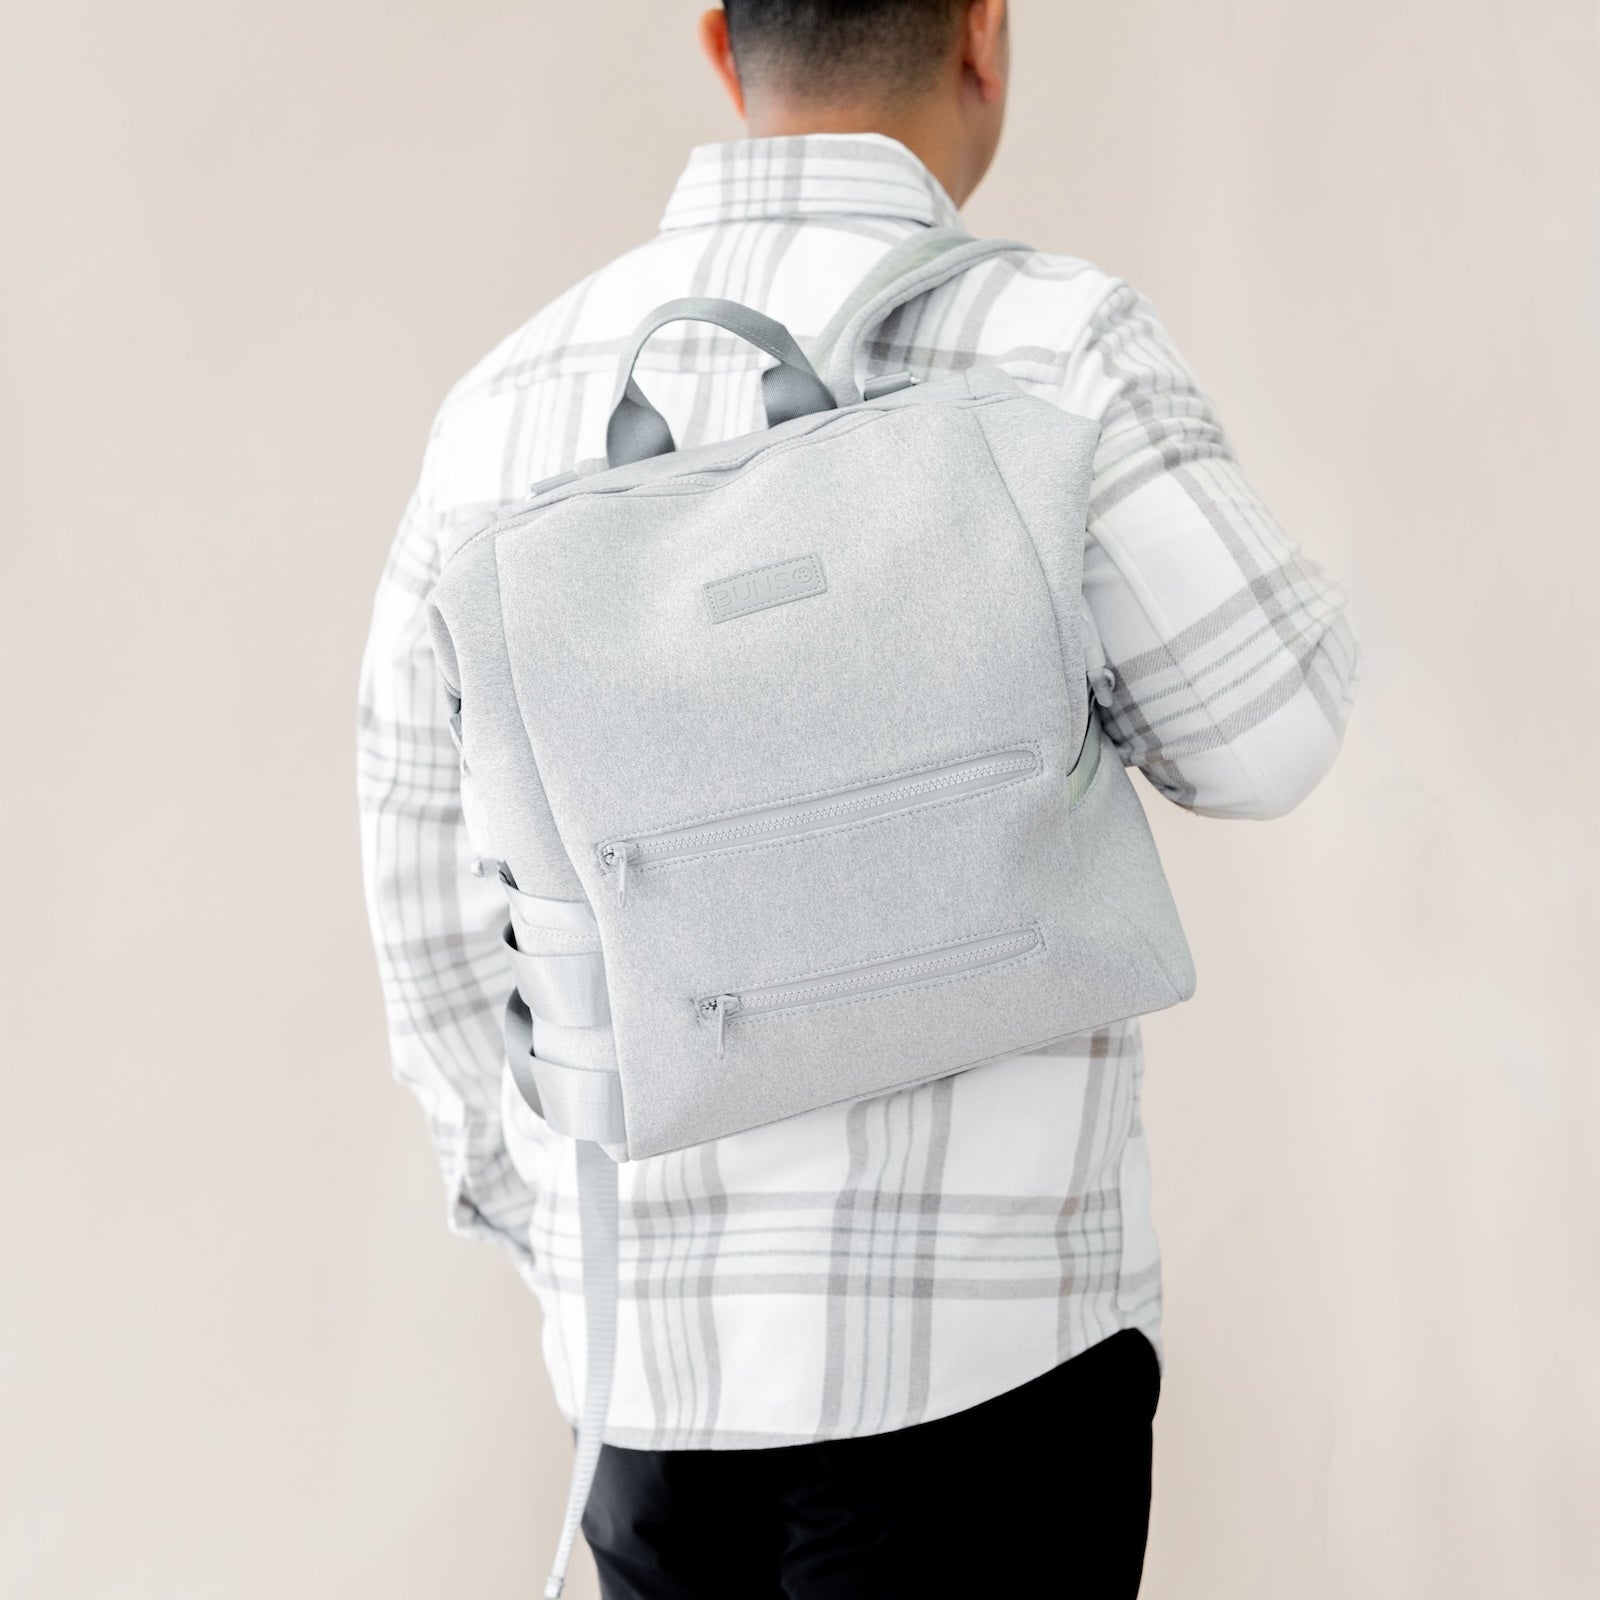 Neoprene Diaper Backpack